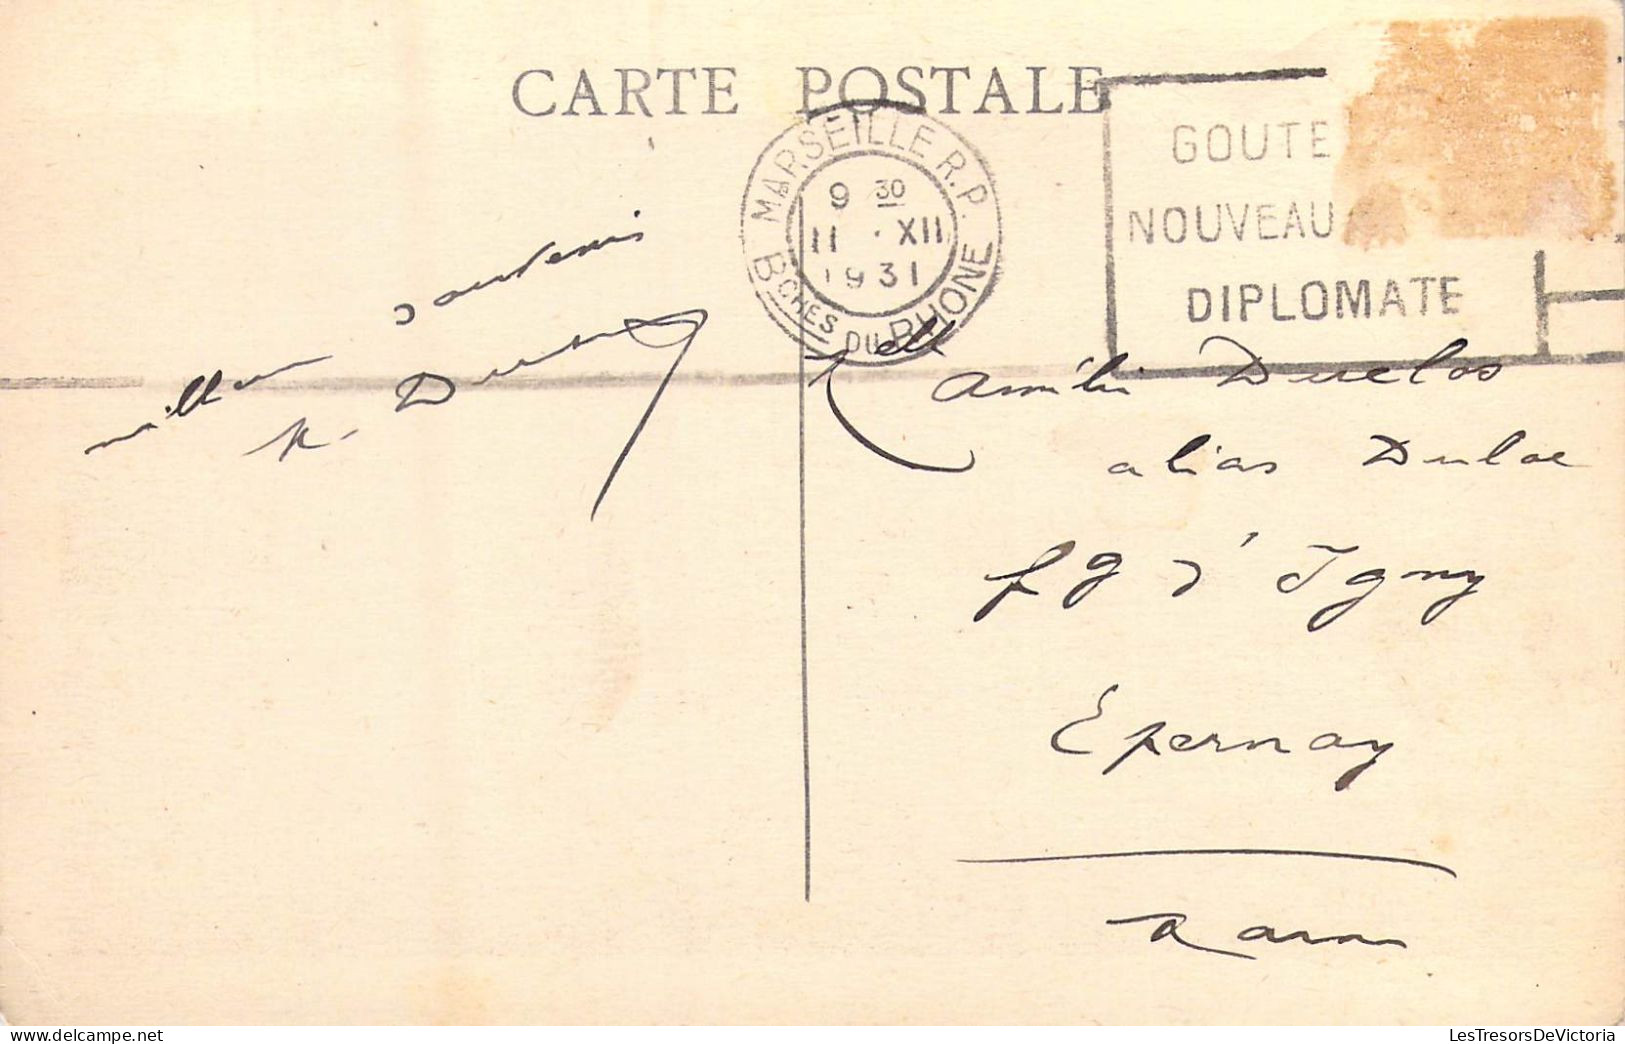 FRANCE - 13 - Marseille - Courrier Rentrant Au Port - Carte Postale Ancienne - Alter Hafen (Vieux Port), Saint-Victor, Le Panier